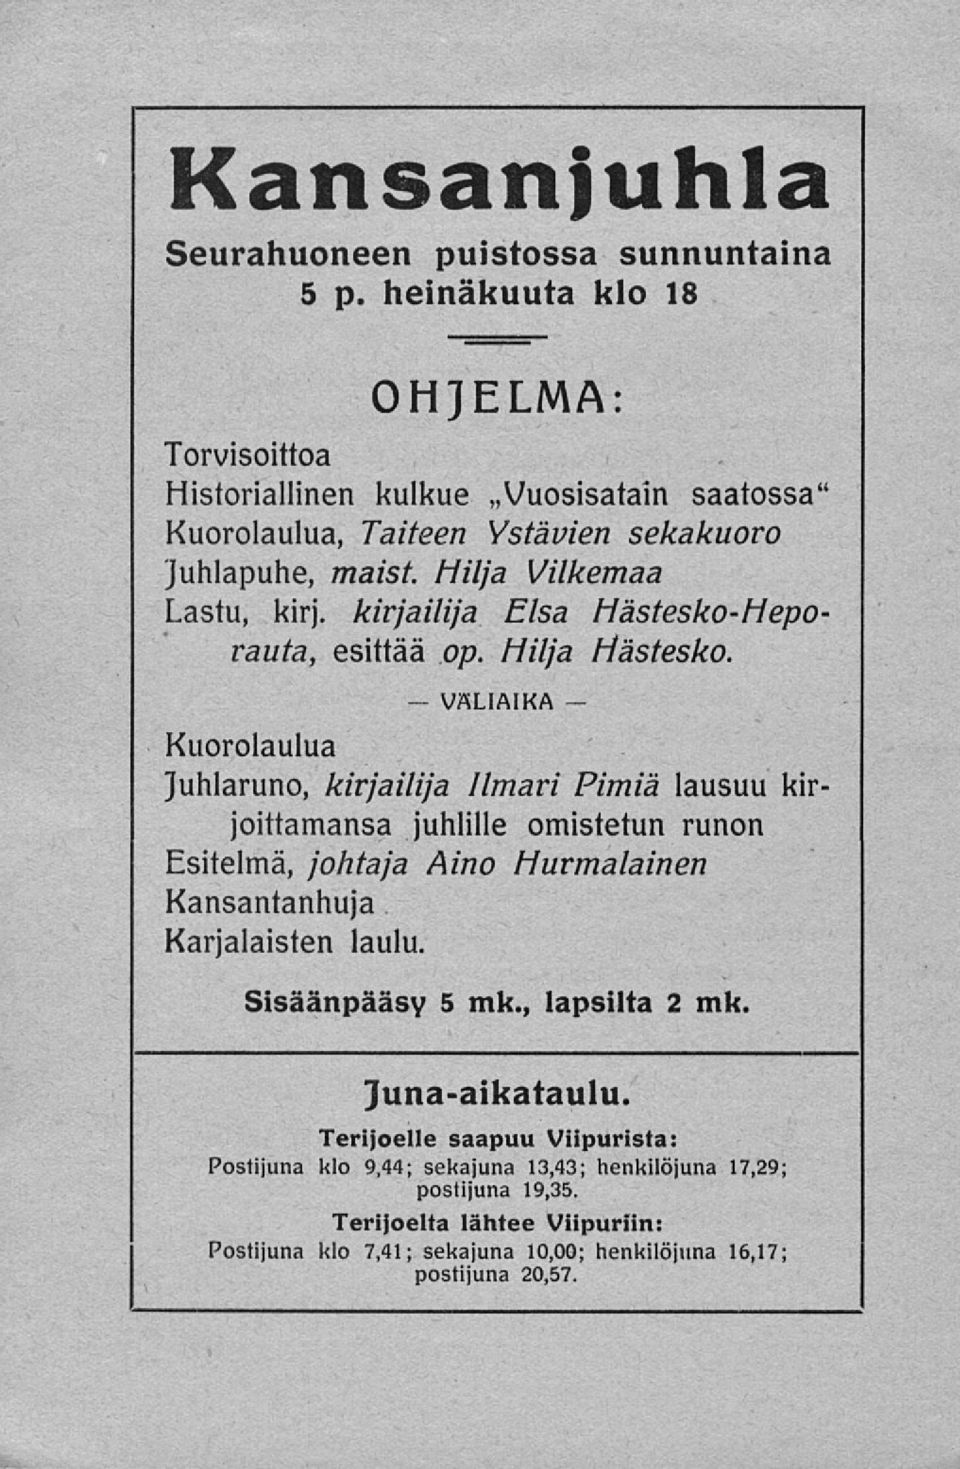 kirjailija Elsa Hästesko-Heporauta, esittää op. Hilja Hästesko.